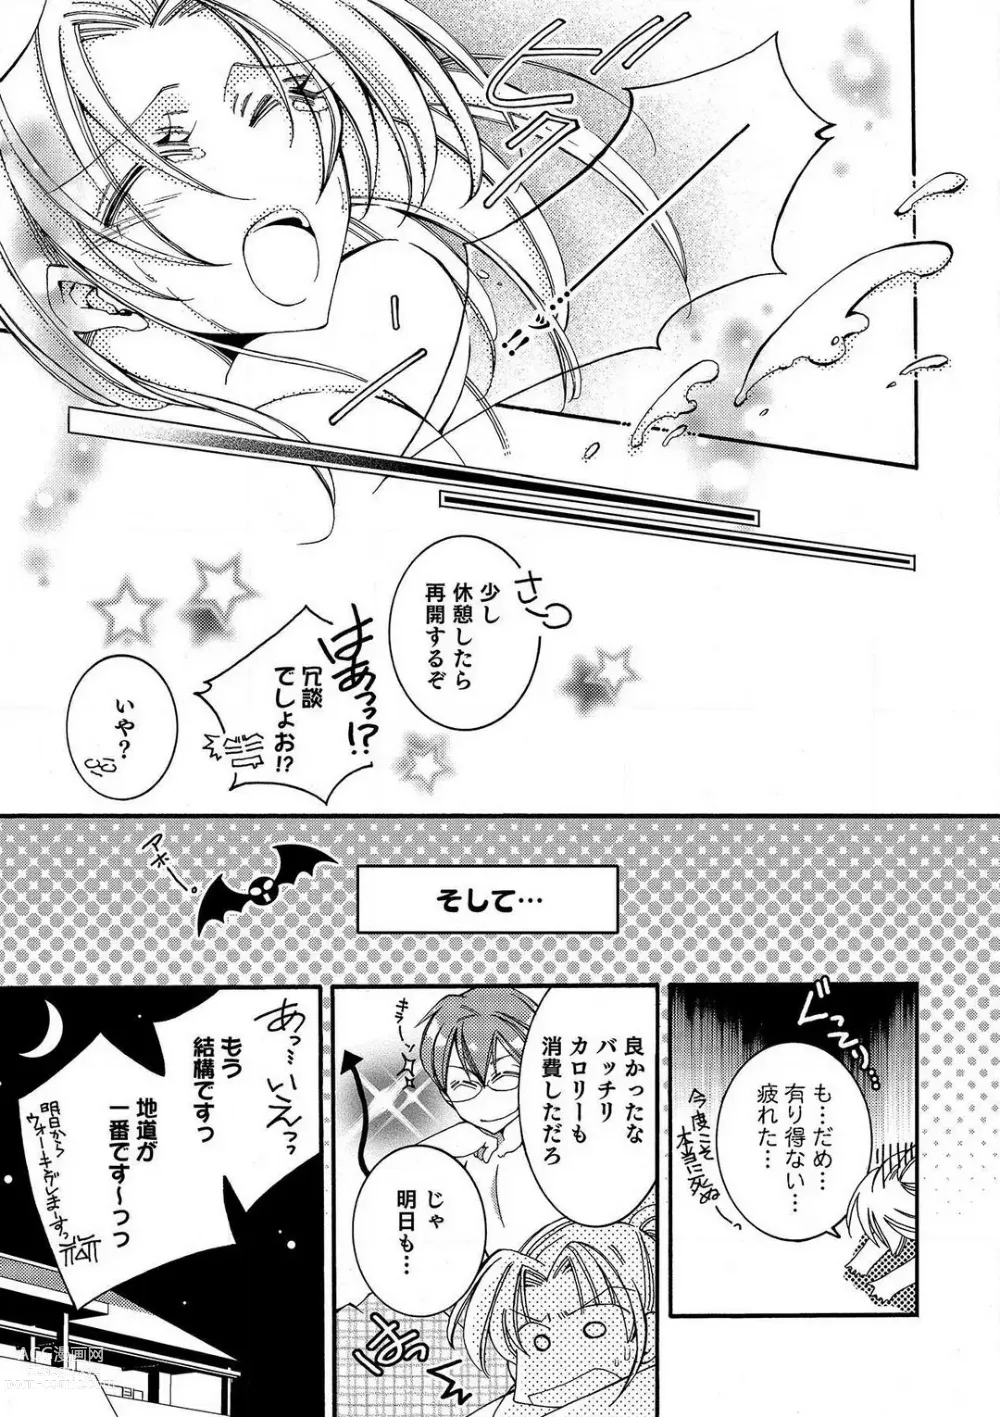 Page 21 of manga LOVE×PLAY 1-4